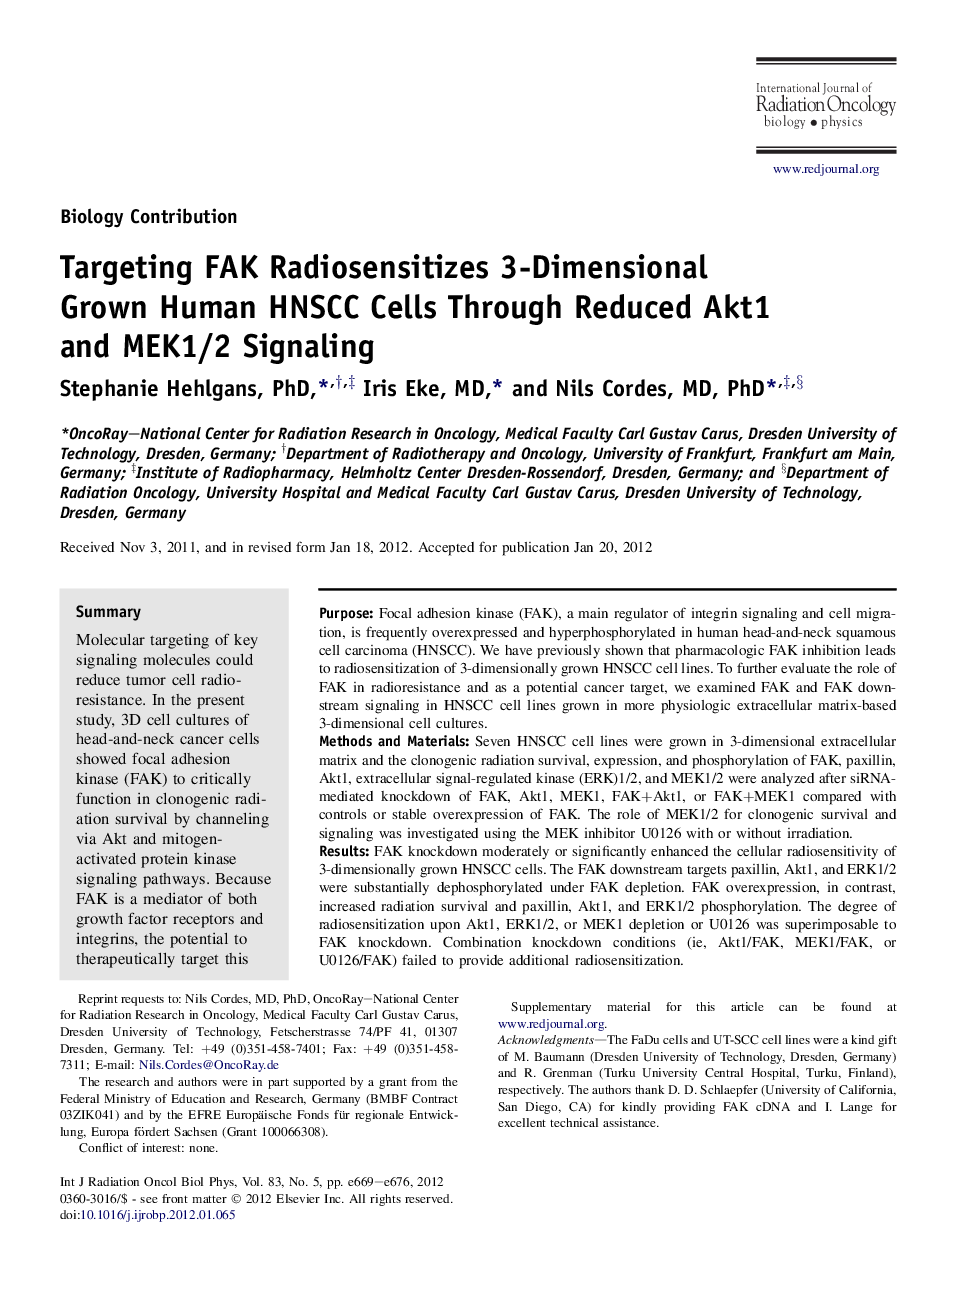 Targeting FAK Radiosensitizes 3-Dimensional Grown Human HNSCC Cells Through Reduced Akt1 and MEK1/2 Signaling